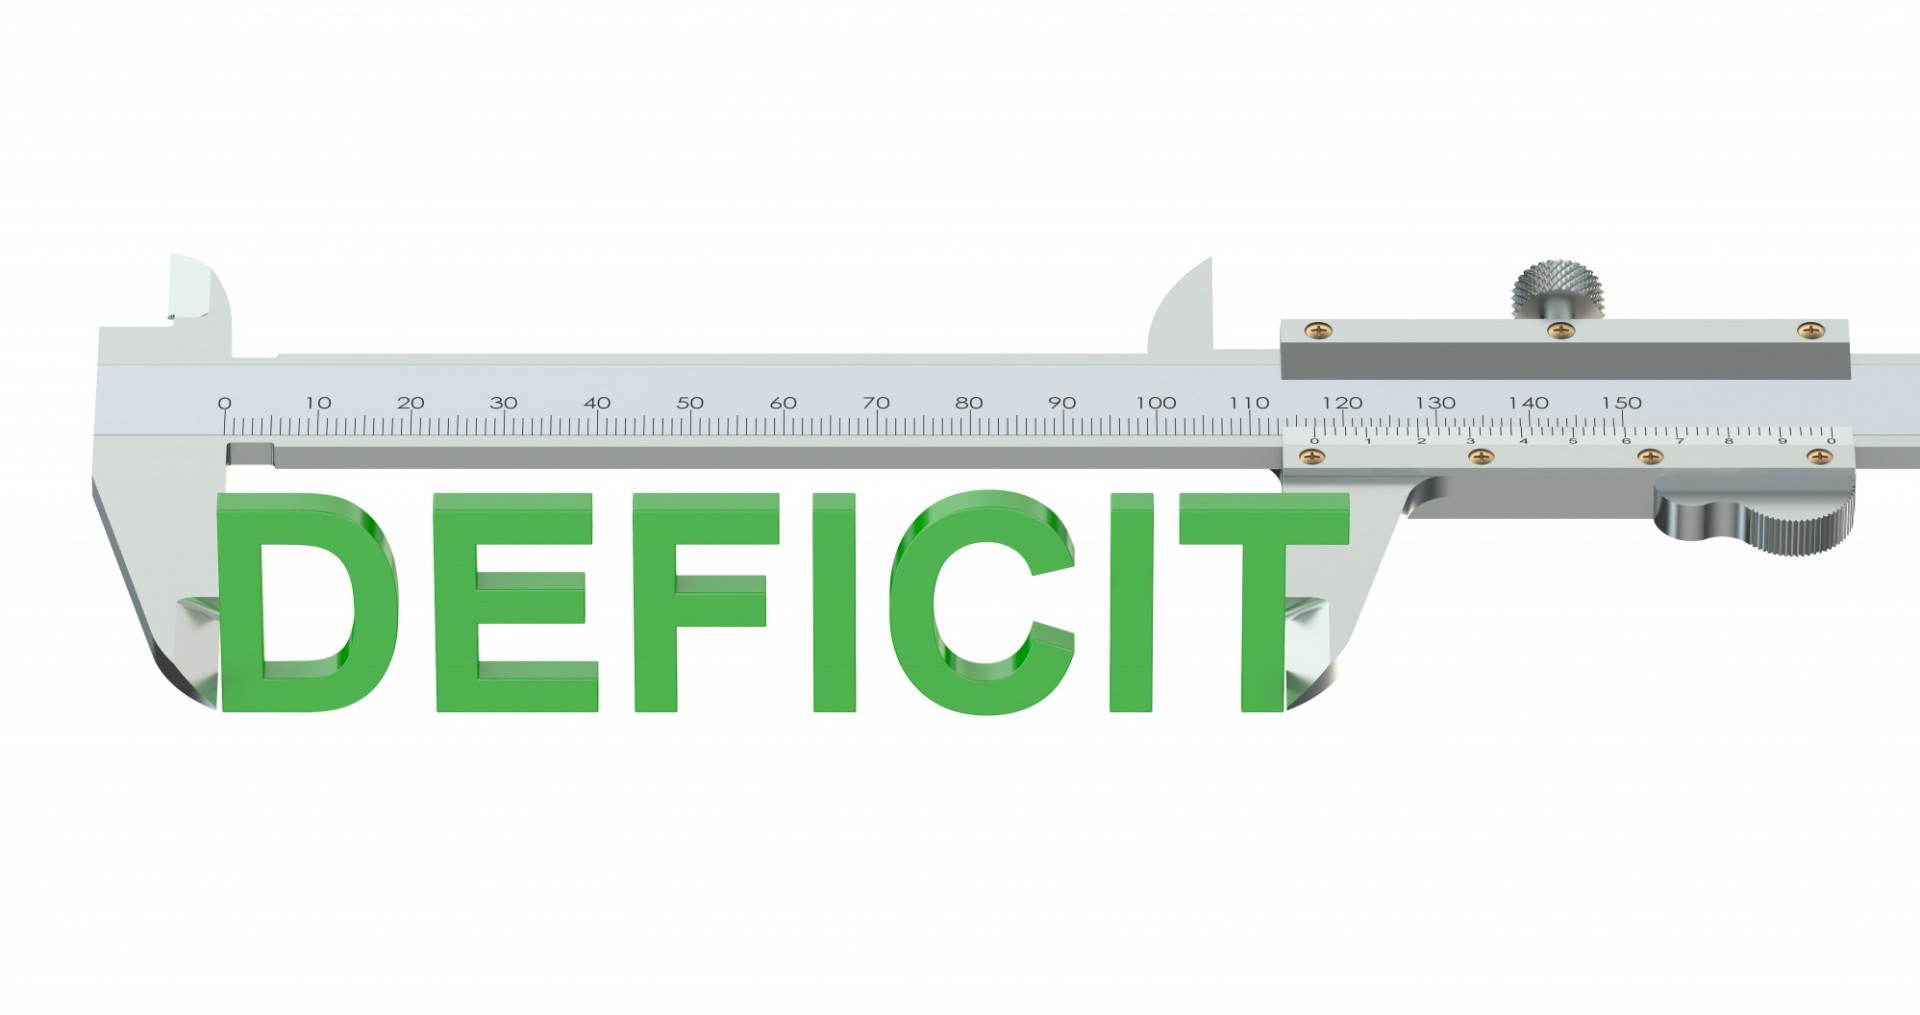 calibrador utilizado para medir la palabra "déficit" que aparece en verde